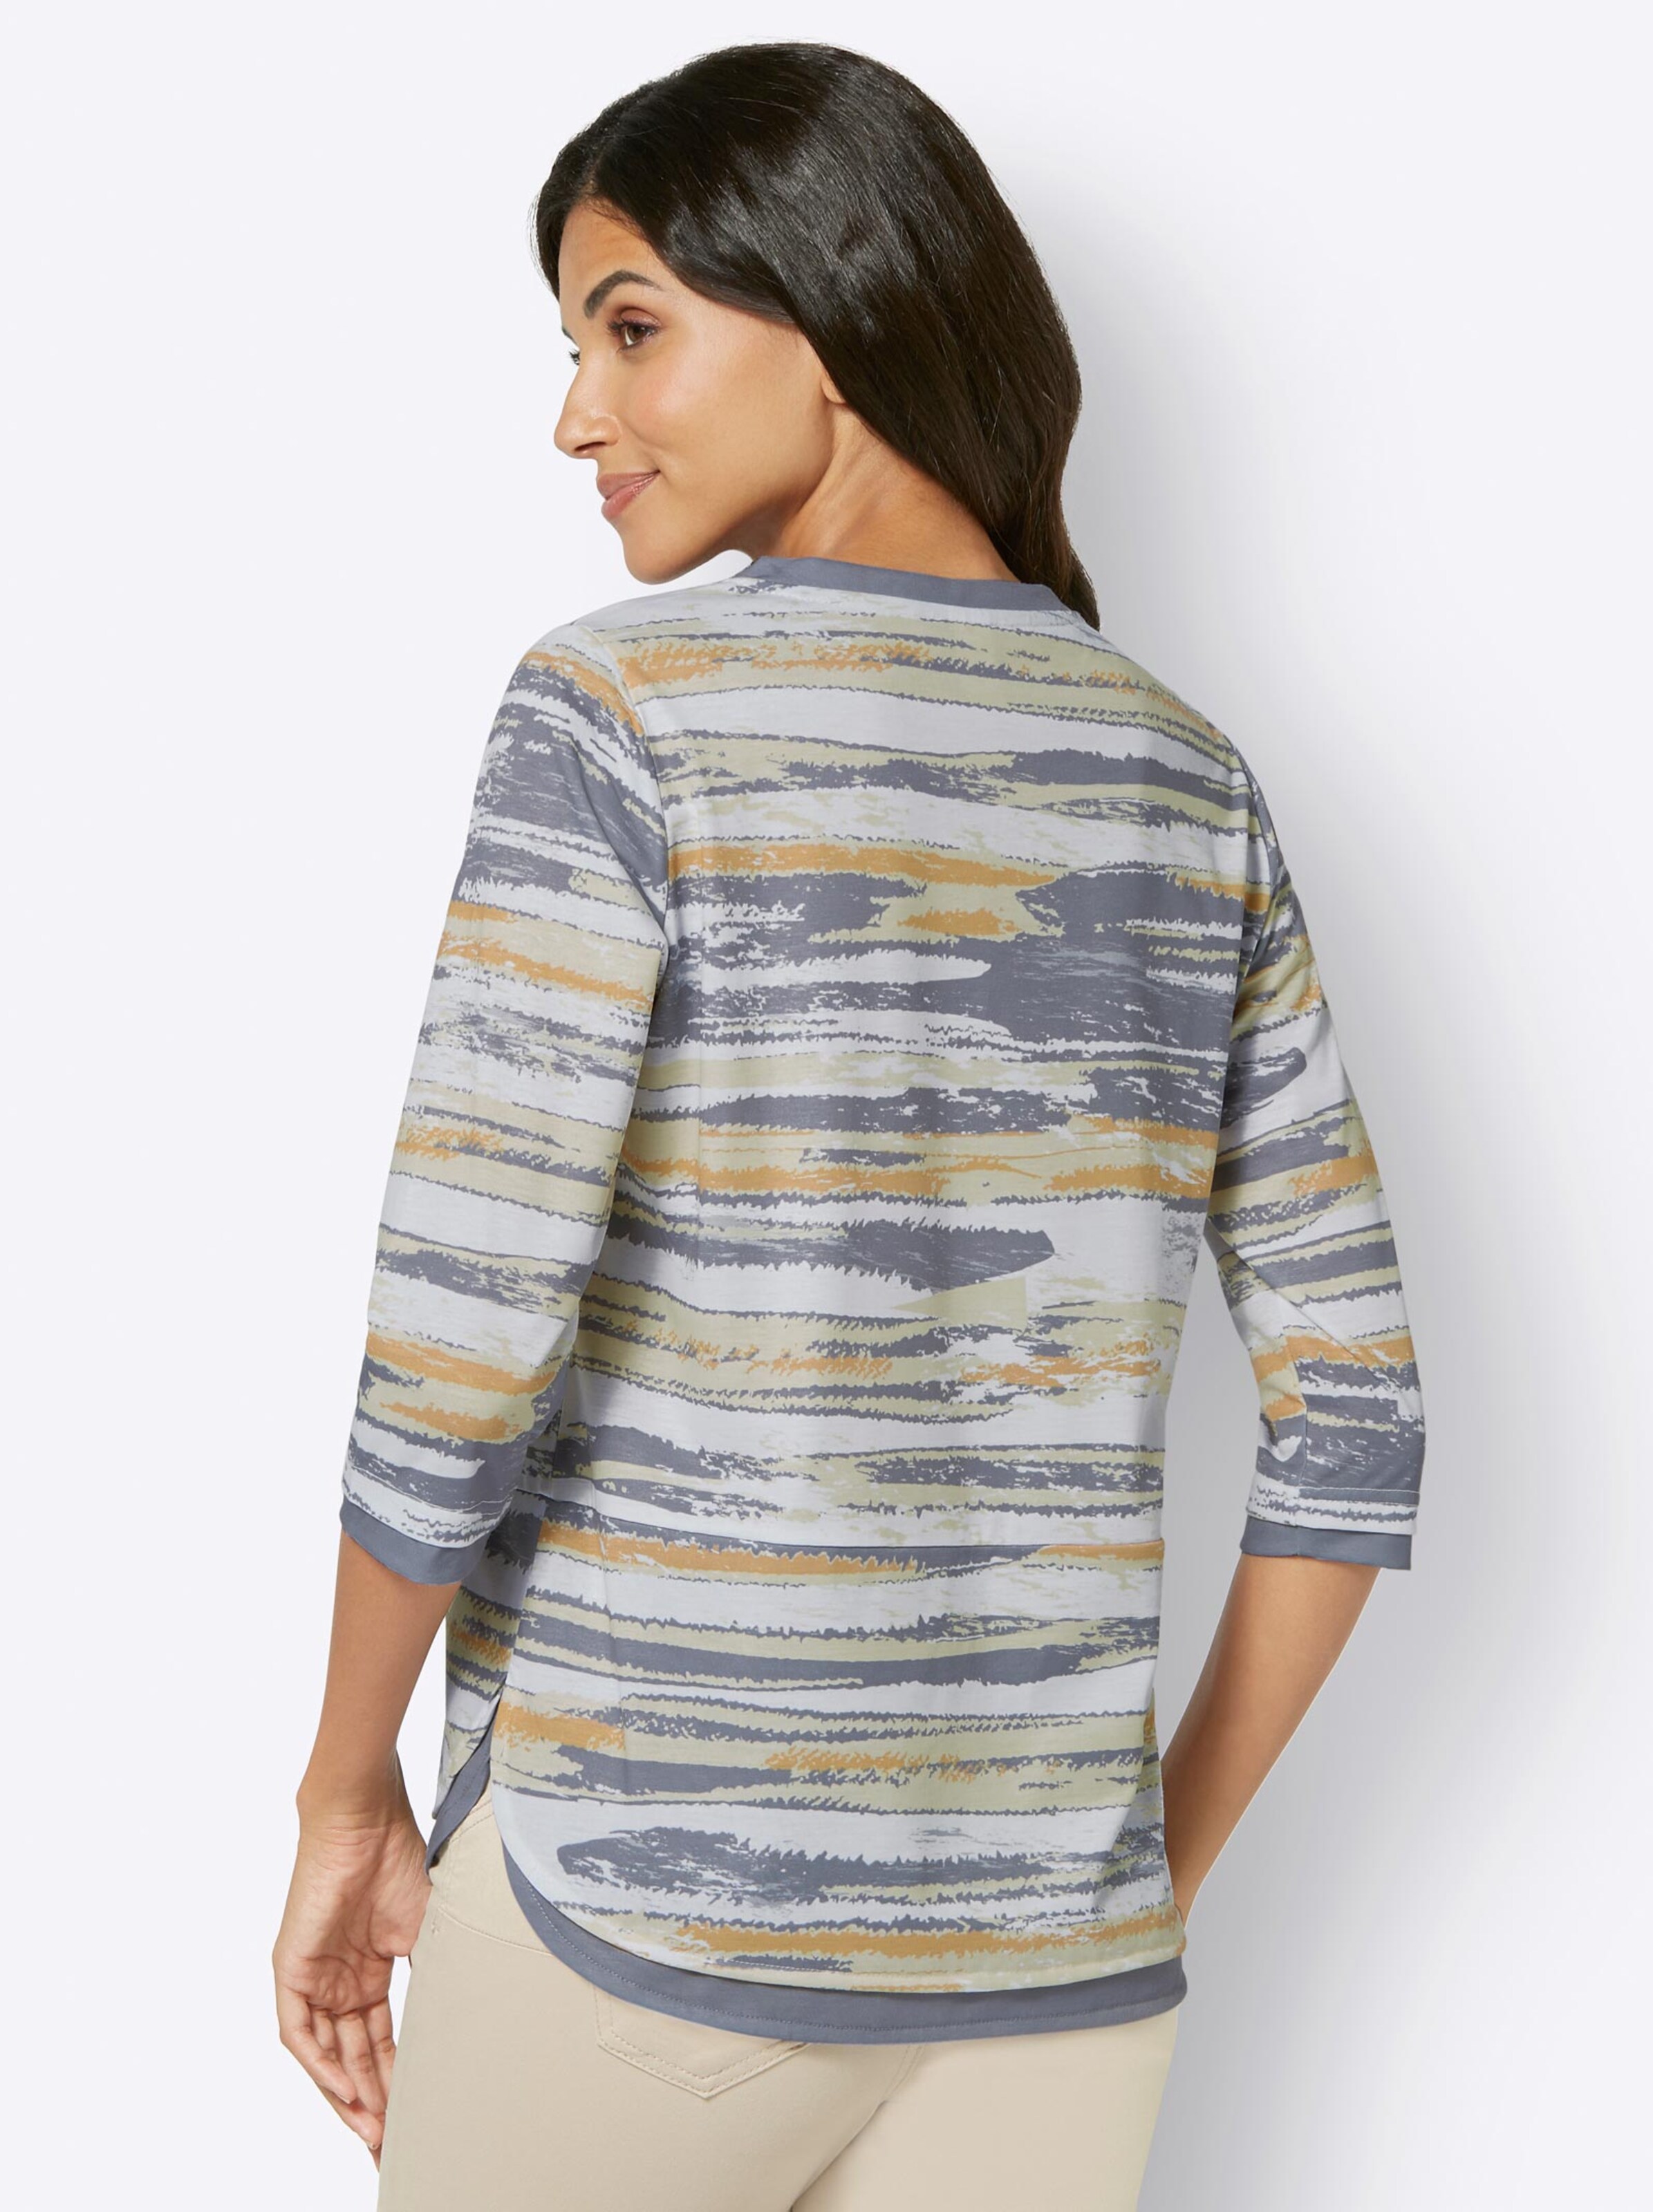 Damenmode Shirts 3/4-Arm-Shirt in grau-zitrone-bedruckt 